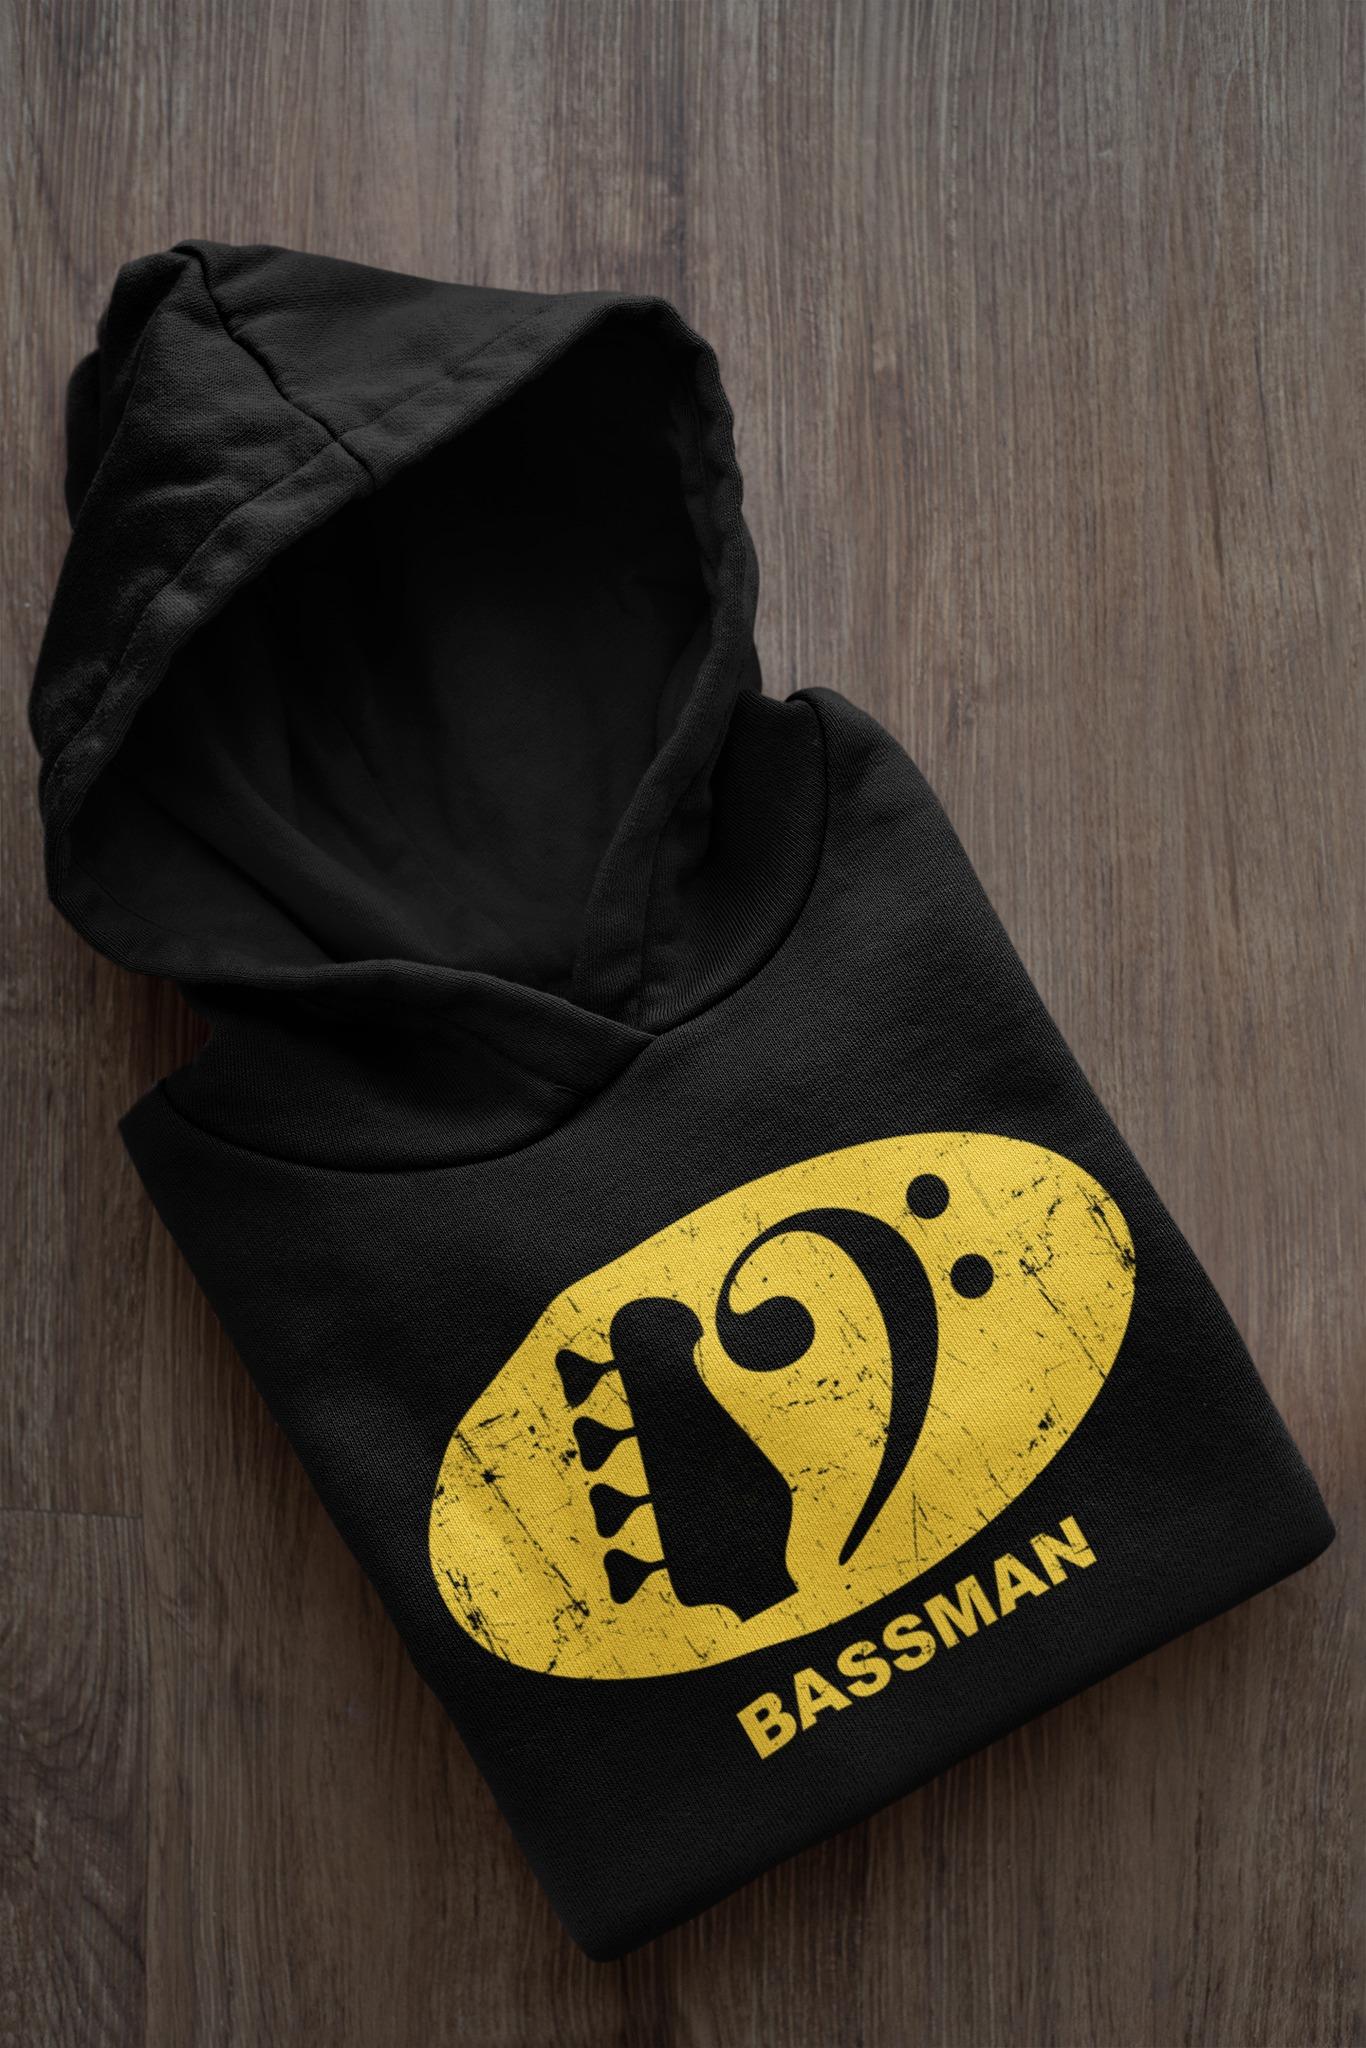 Bassman T-shirt - Gift for bass guitarist, love playing bass